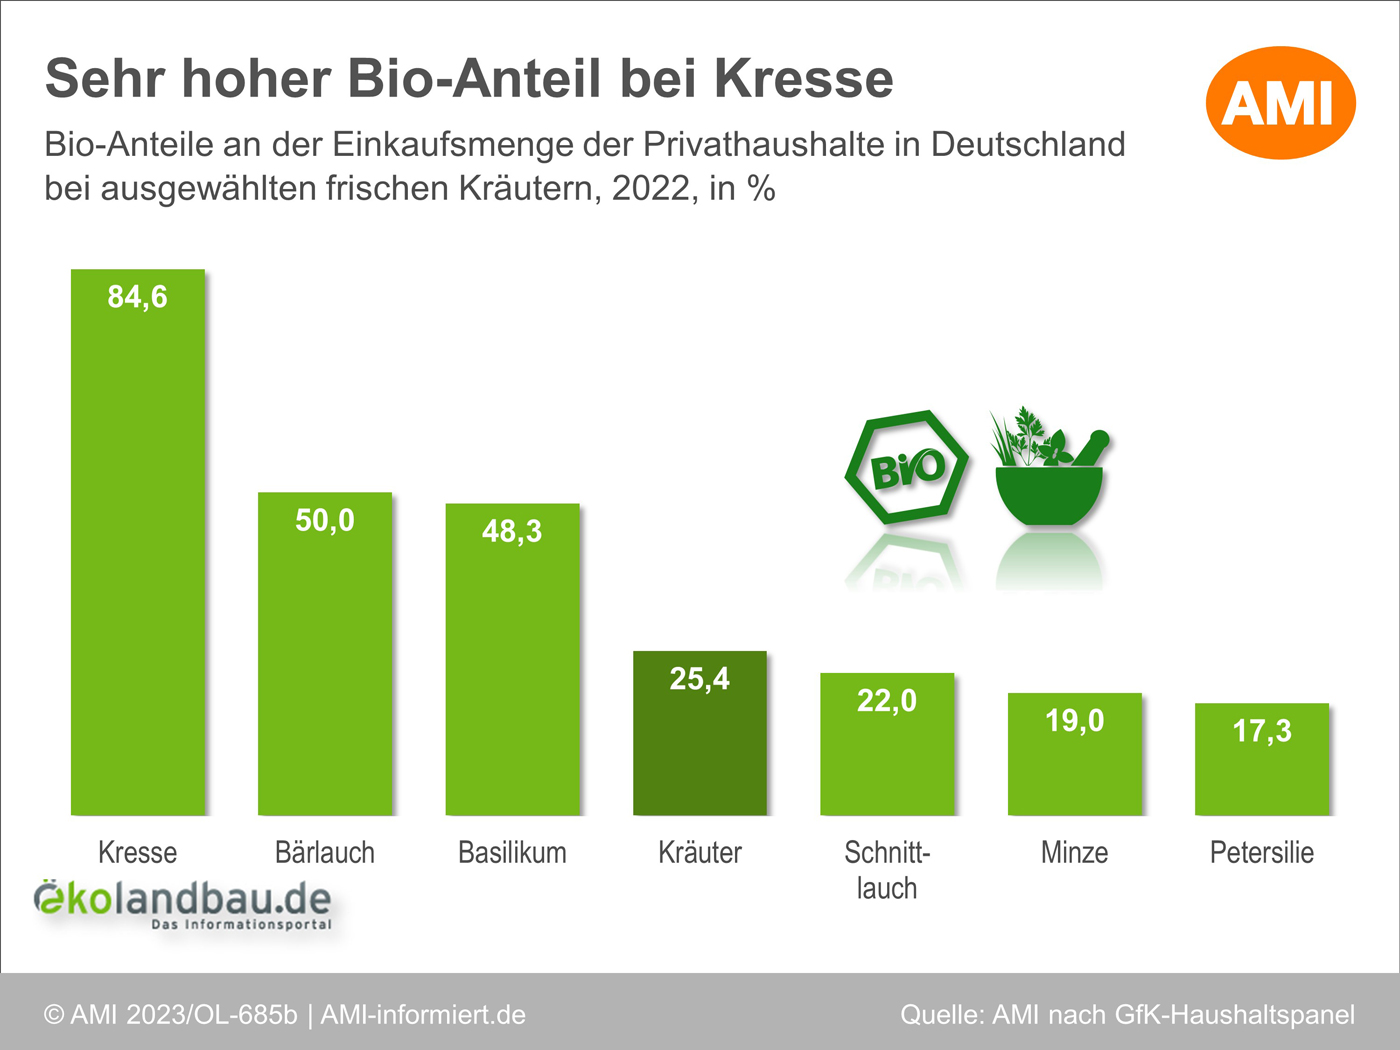 Bio-Anteile an den Kräuterkäufen der Privathaushalte in Deutschland im Jahr 2022. Klick führt zu Großansicht in neuem Fenster.